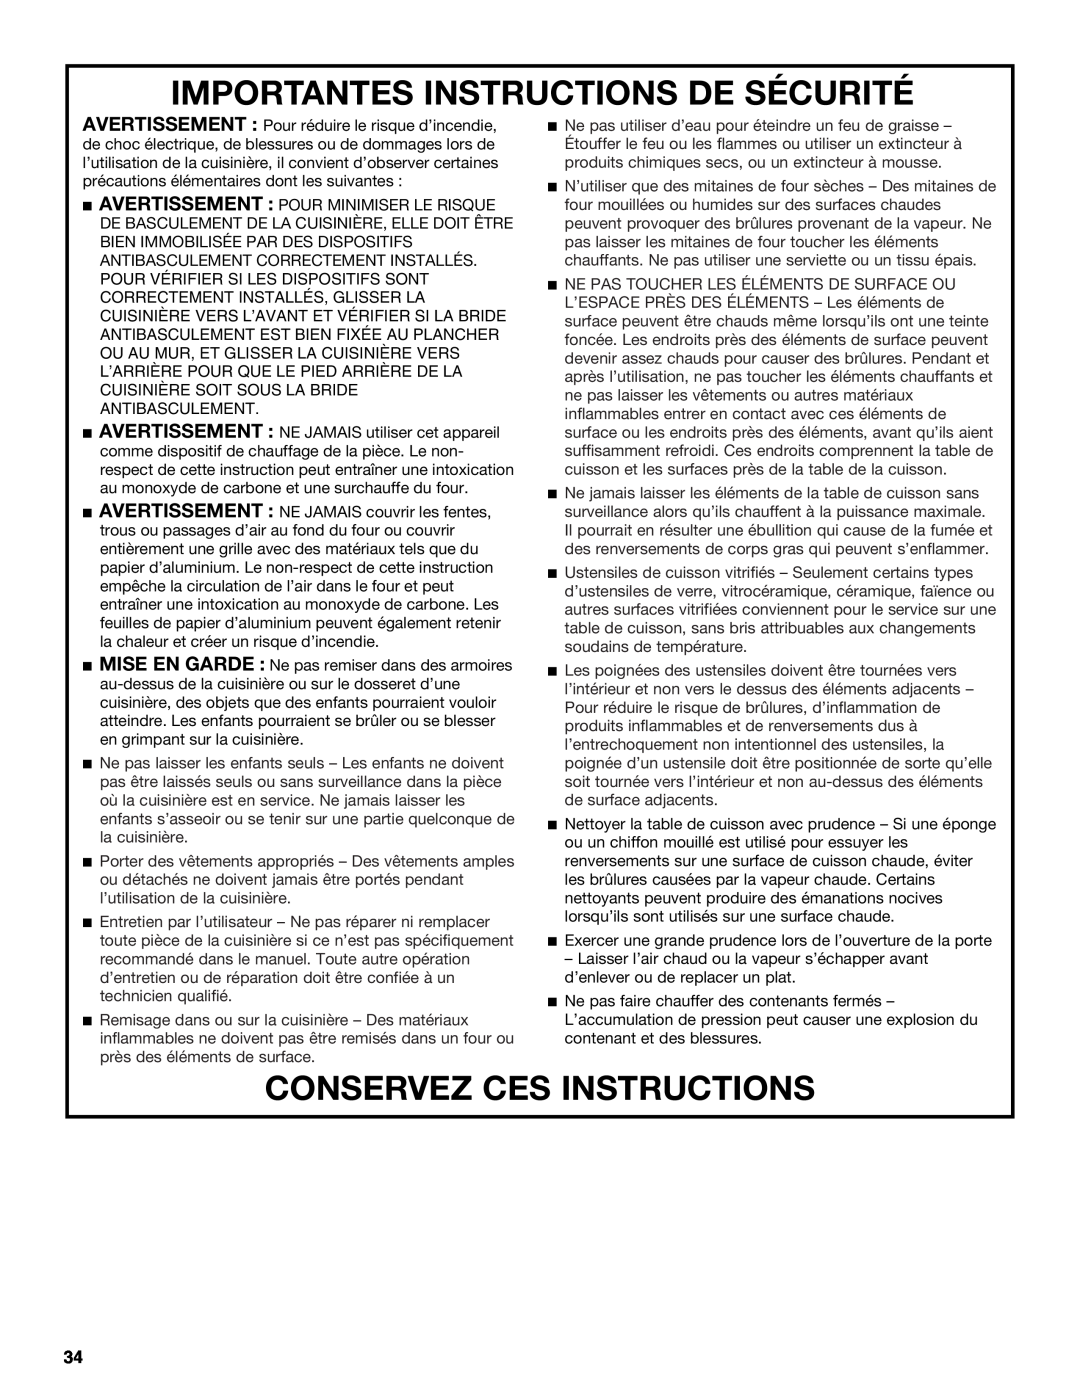 Jenn-Air JD59860 manual Importantes Instructions De Sécurité, Conservez Ces Instructions 